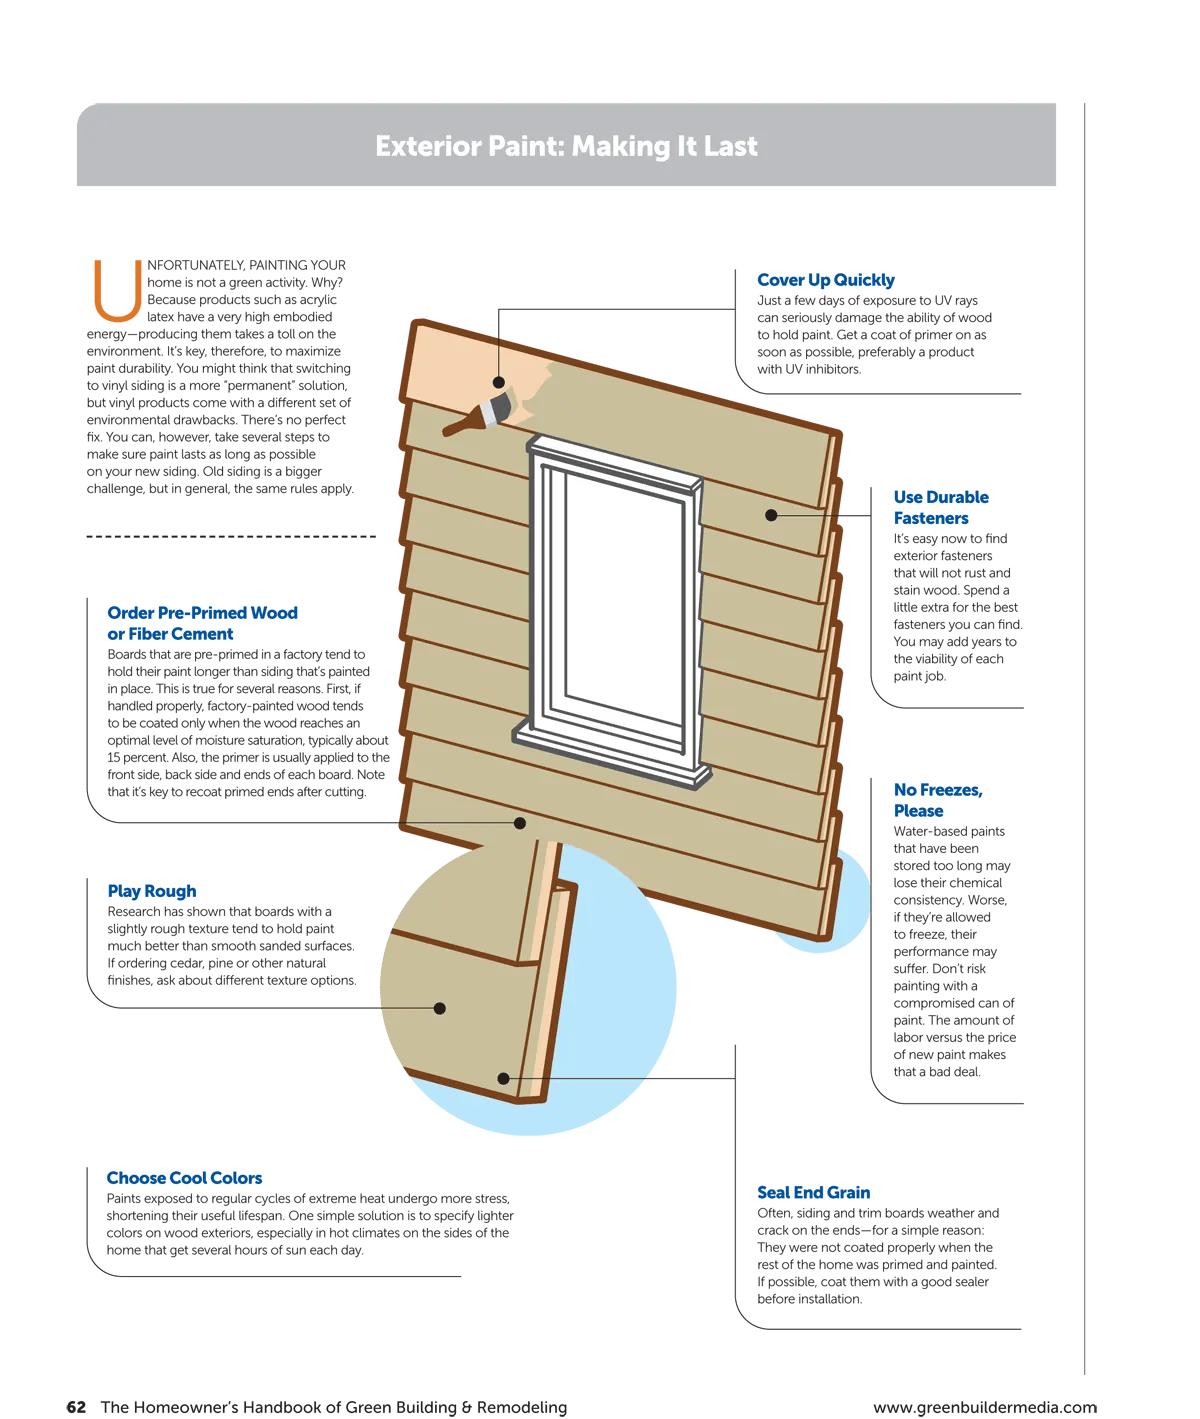 Homeowners Handbook of Green Building & Remodeling-62